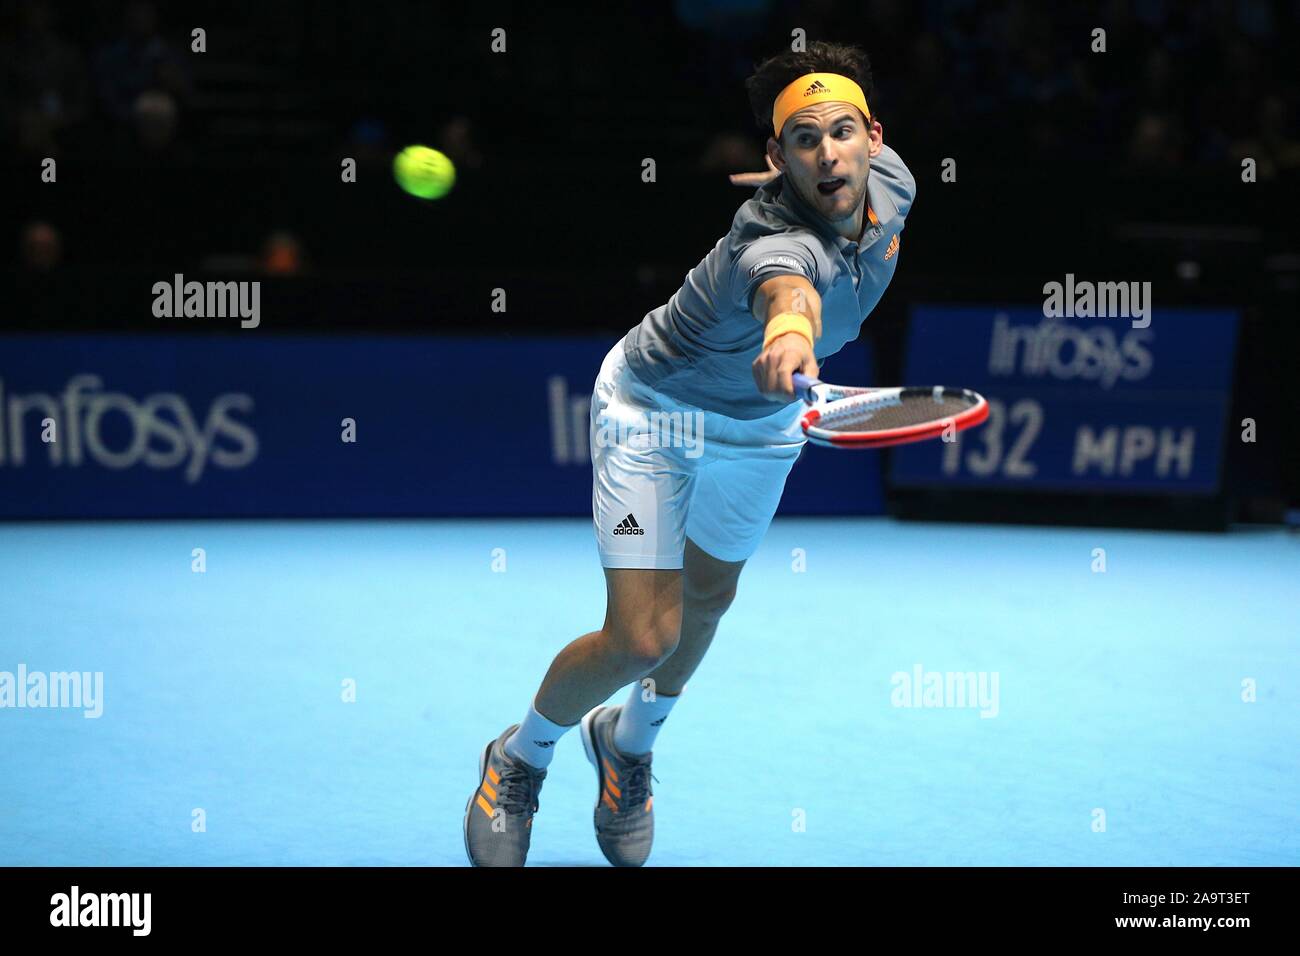 Londra, Regno Unito. 17 Nov, 2019. Dominic Thiem (AUT) è un confronto valido per l'ATP finals 2019 torneo tenutasi a Londra, Inghilterra. Credito: Andre Chaco/FotoArena/Alamy Live News Foto Stock